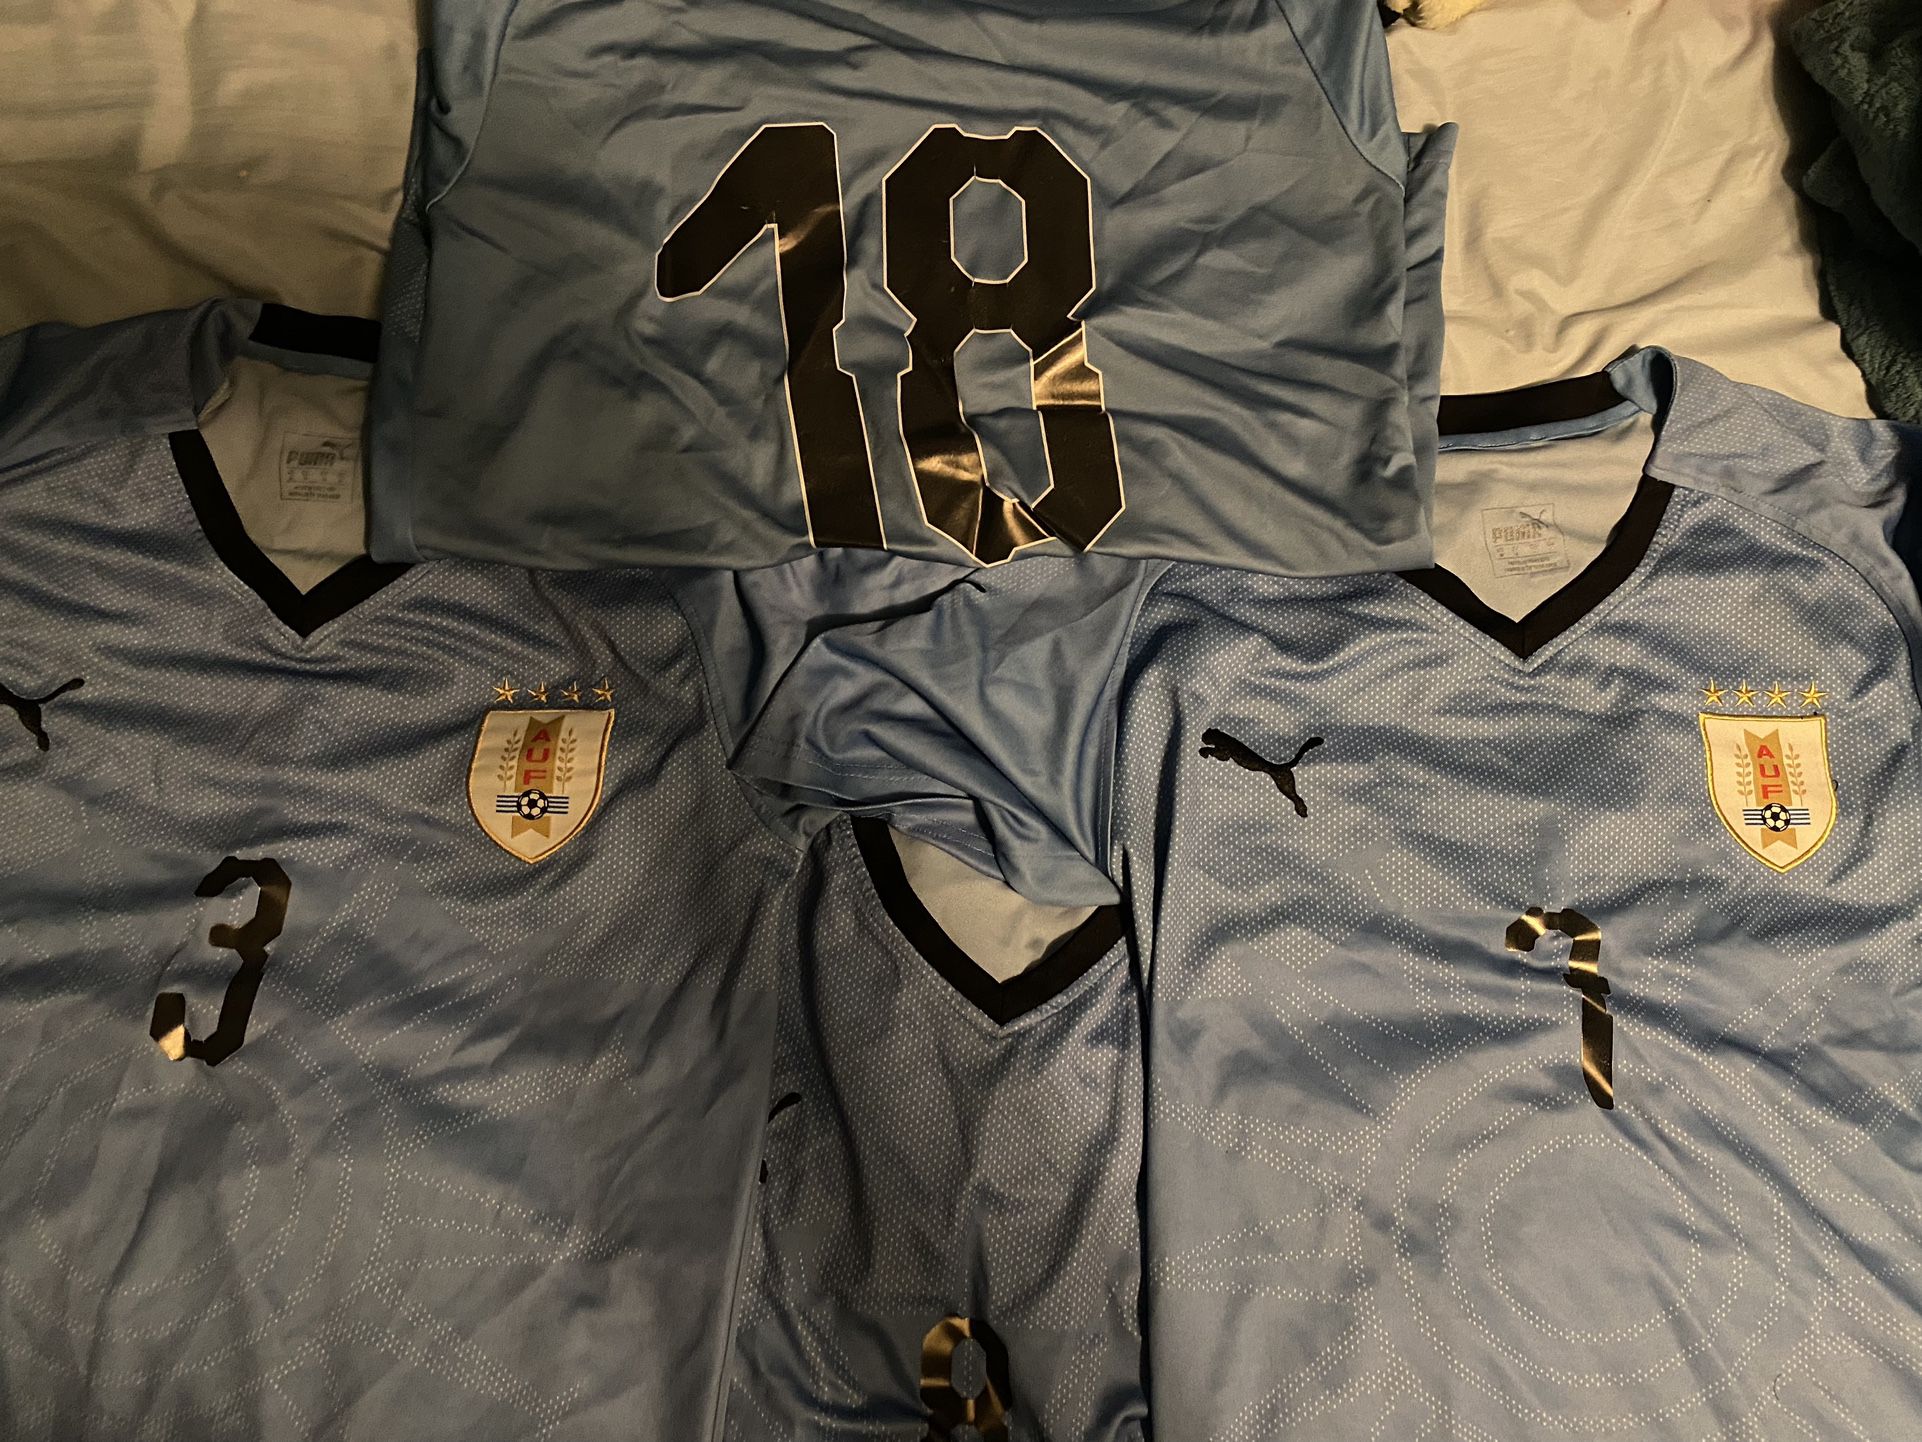 Uruguay Jerseys